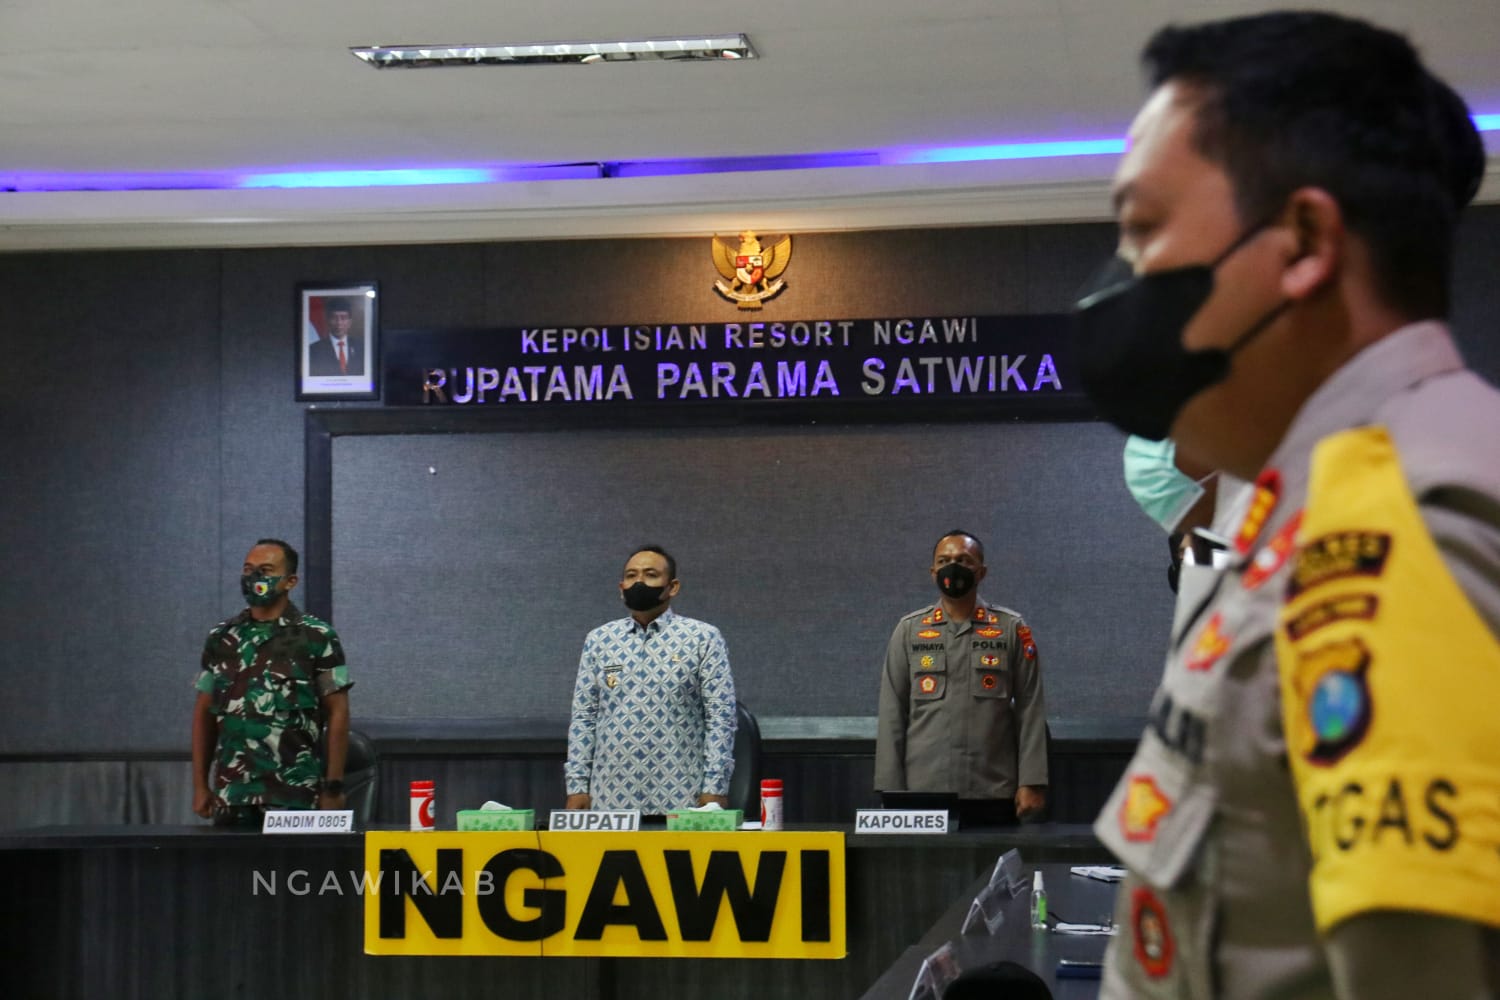 Bupati Ngawi Ikuti Rakor Kesiapan Pengamanan Idul Fitri 1443 H Bersama Kapolri.